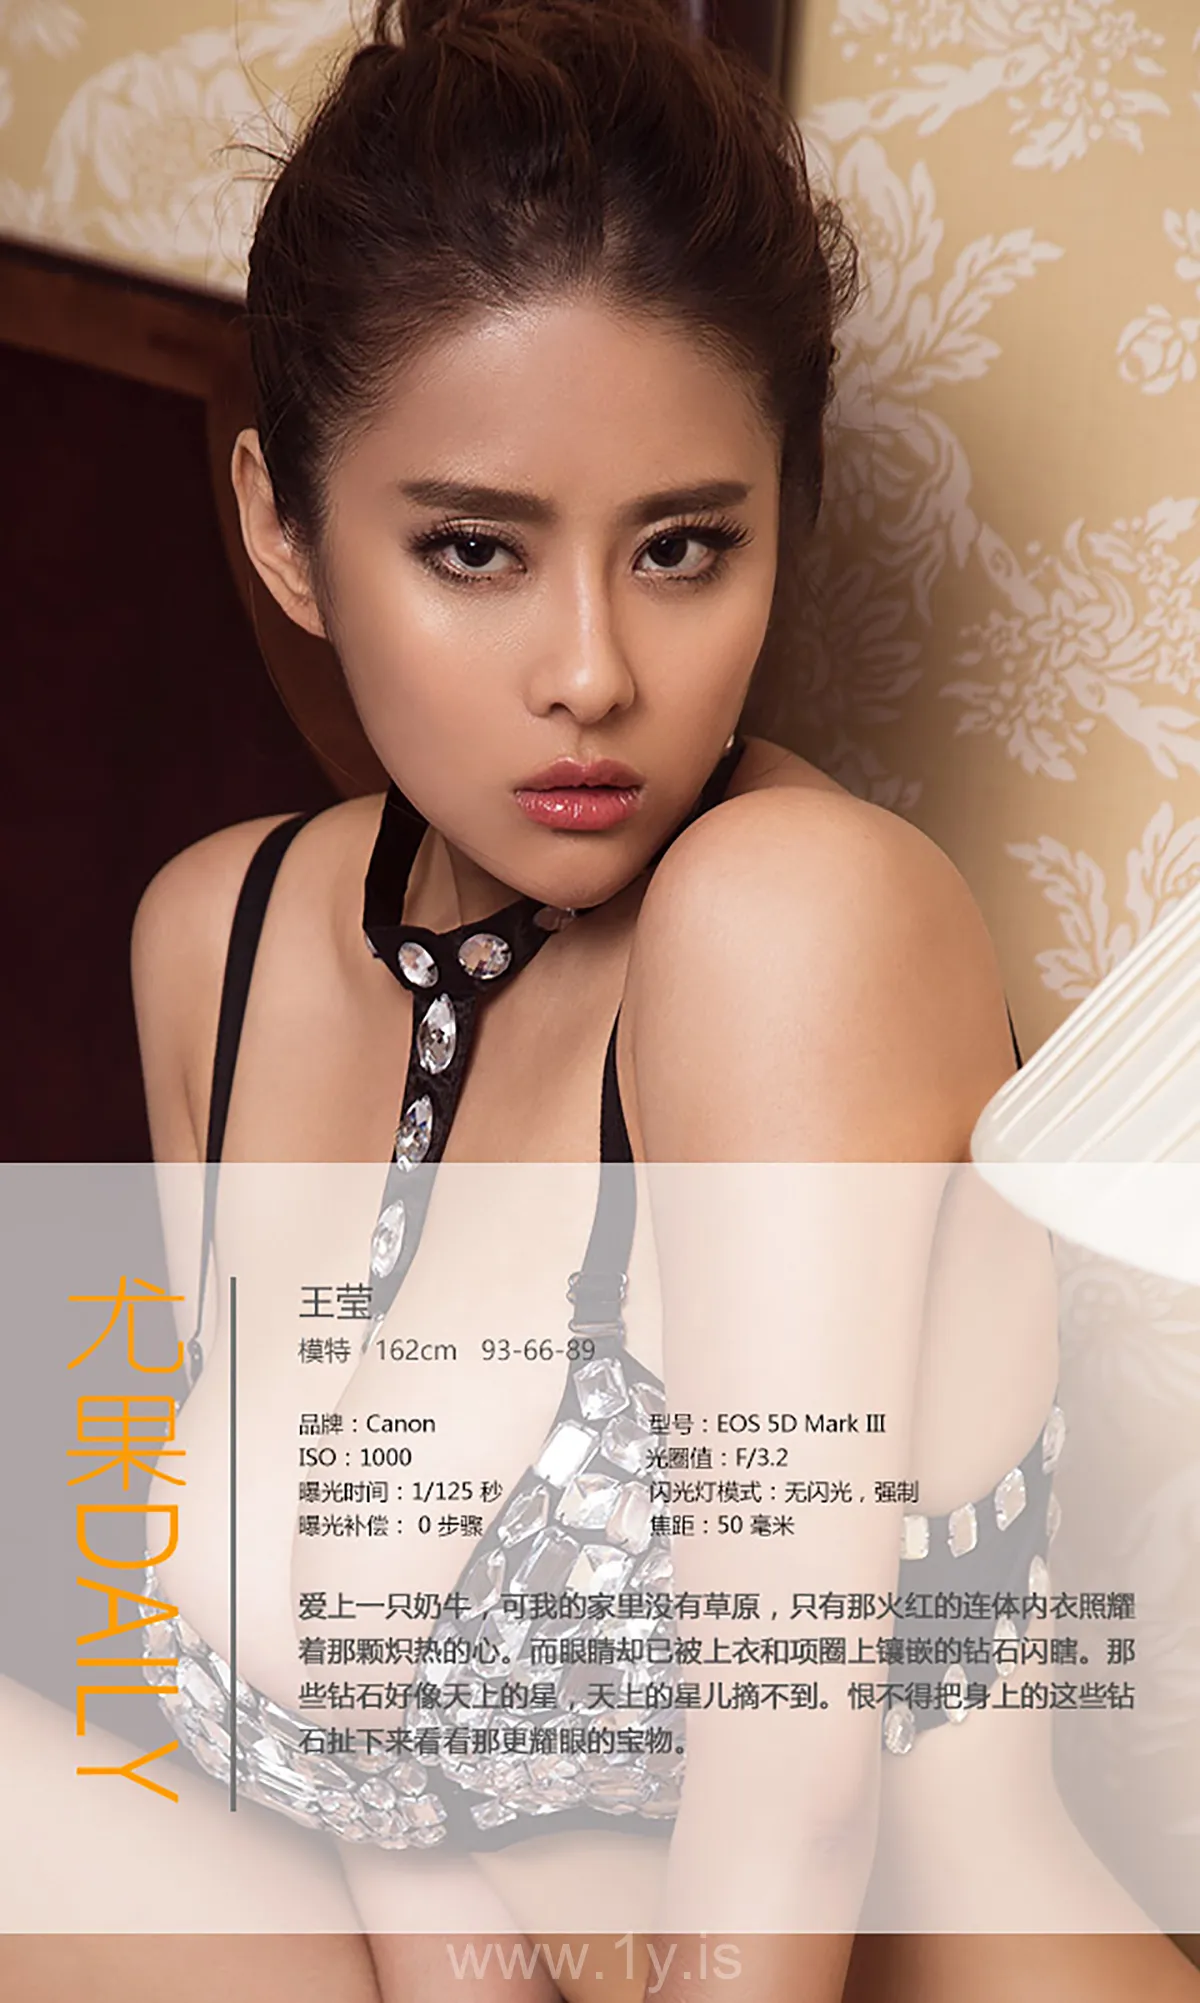 UGIRLS NO.438 Cute Chinese Hottie 钻石钻石亮晶晶王莹